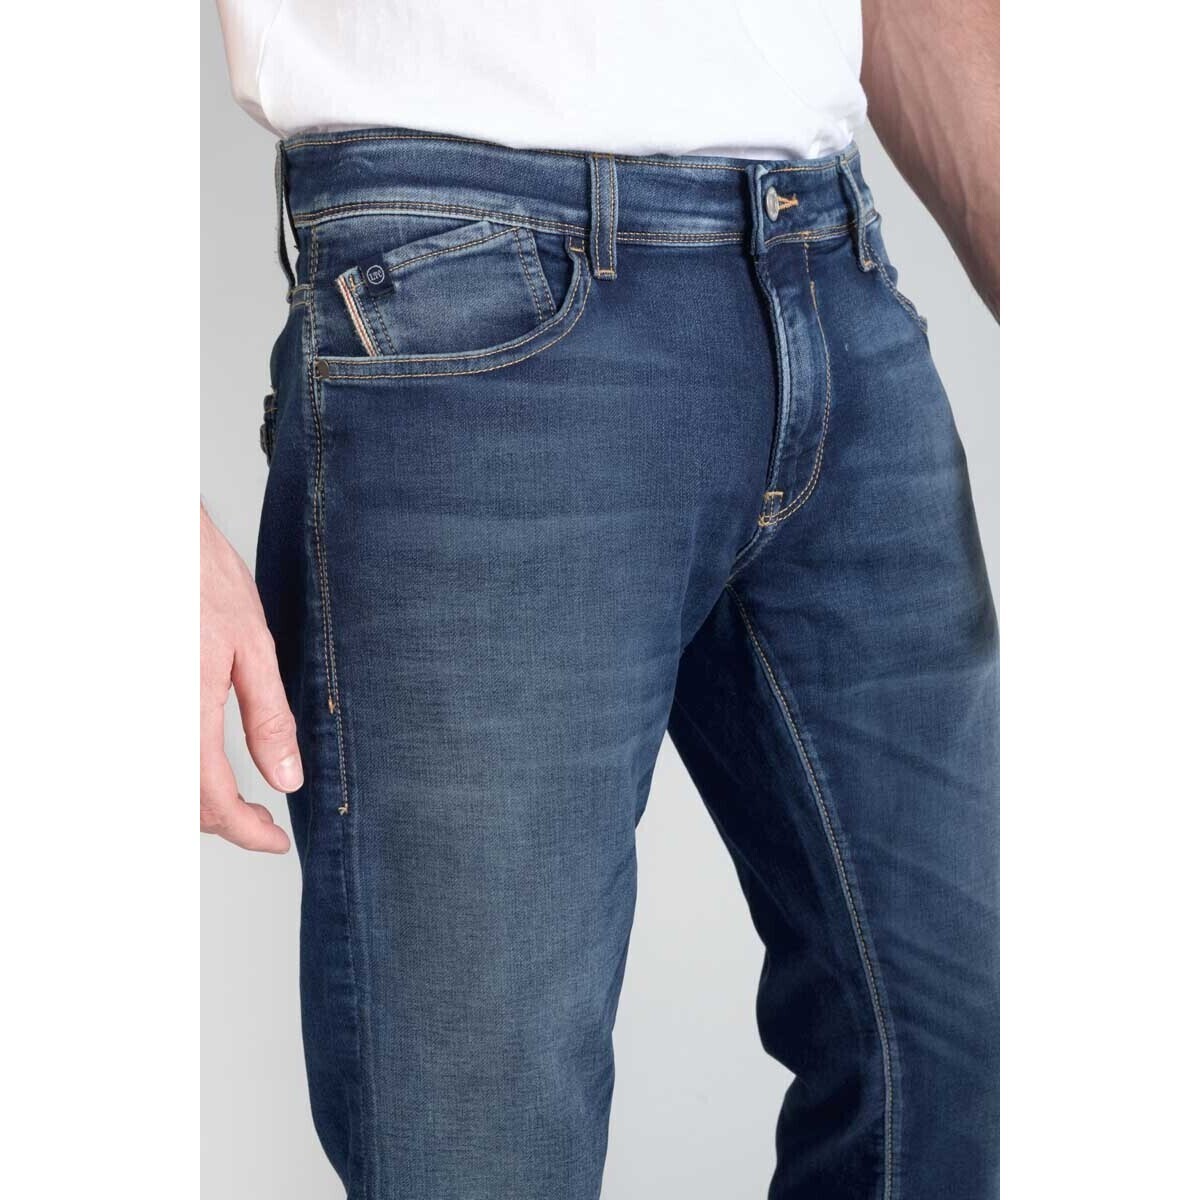 Le Temps des Cerises Bleu Jogg 700/11 adjusted jeans bleu dE8wSRxp